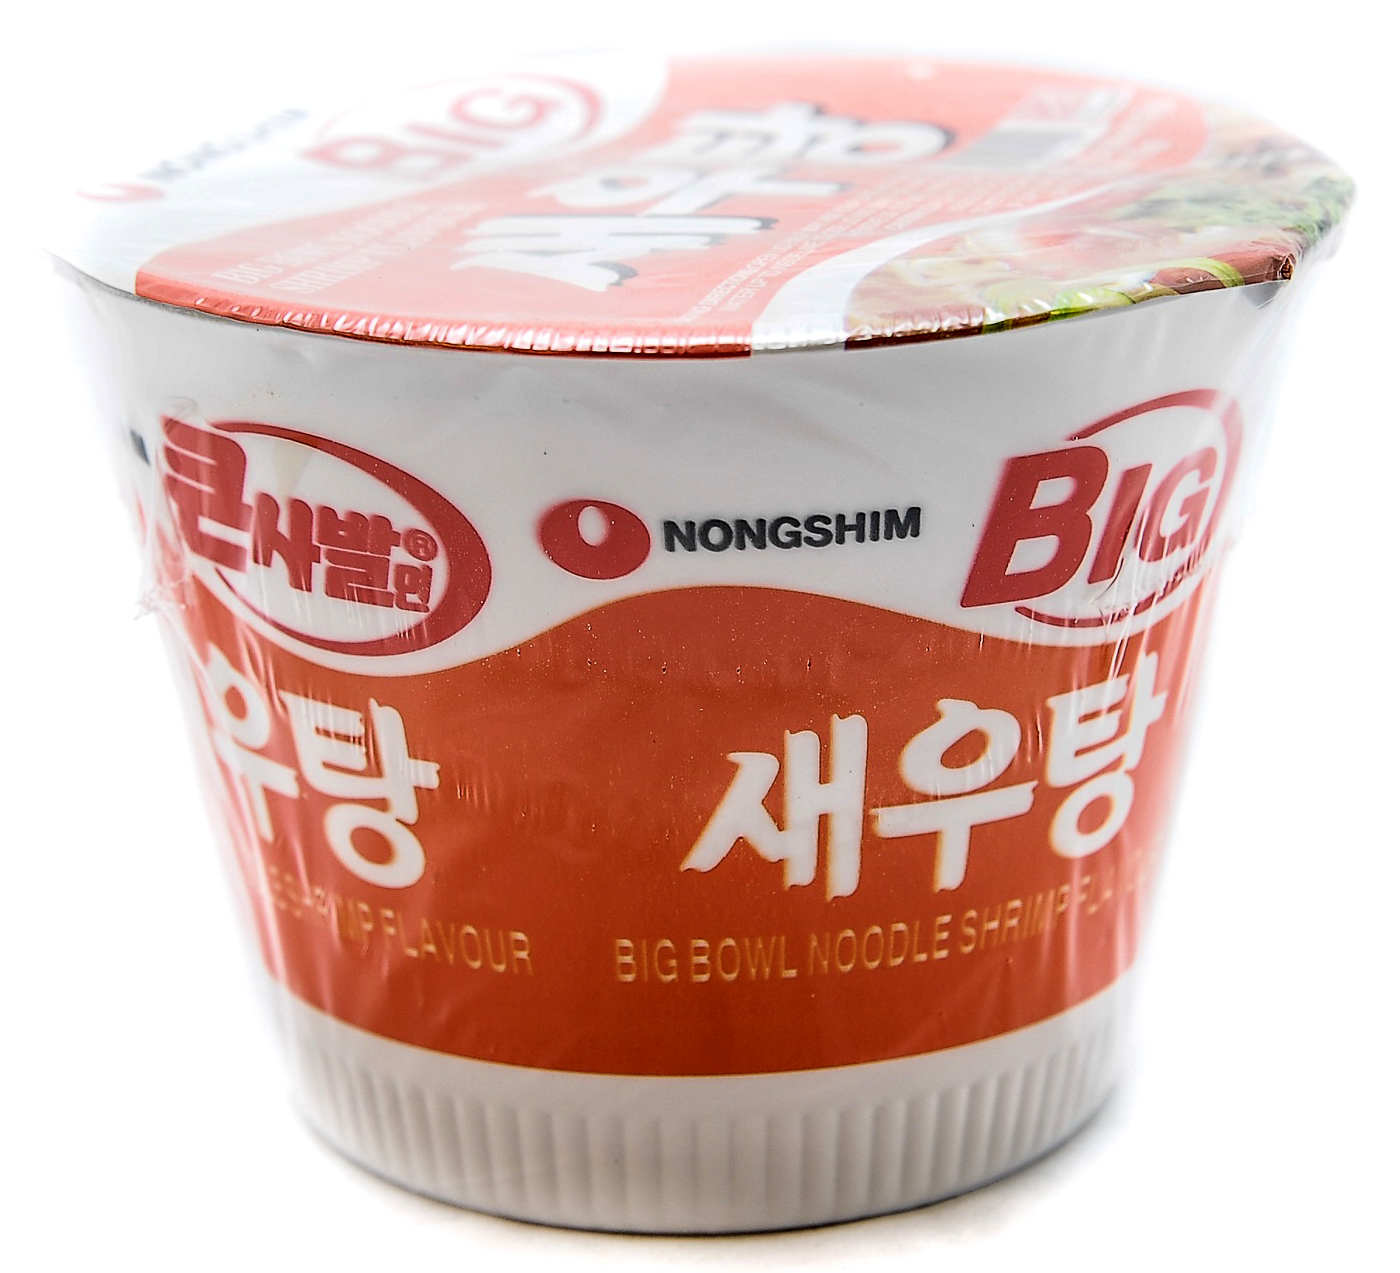 NONGSHIM big bowl noodle shrimp flv 115g KR